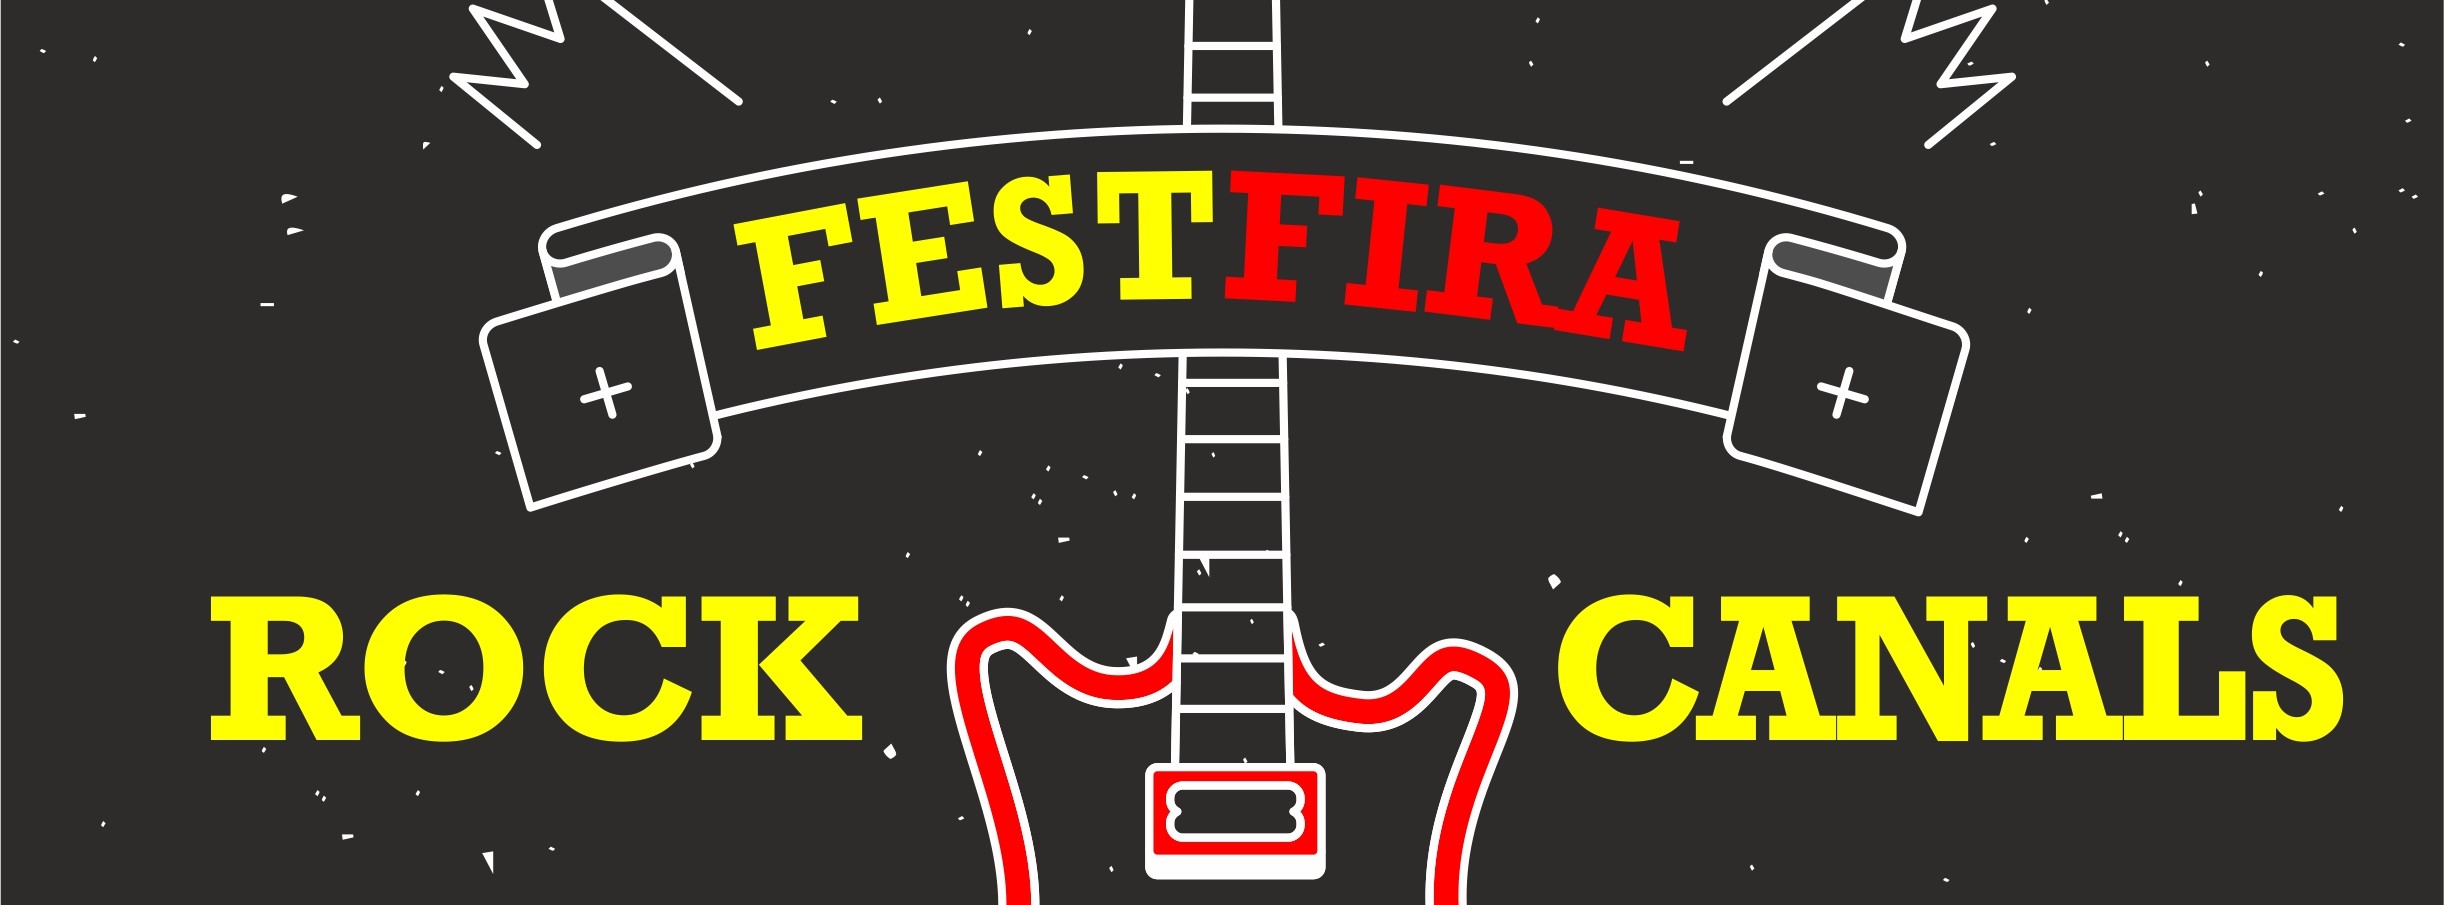 Els grups locals tindran el seu propi espai al FestFira Rock de la Fira 2017